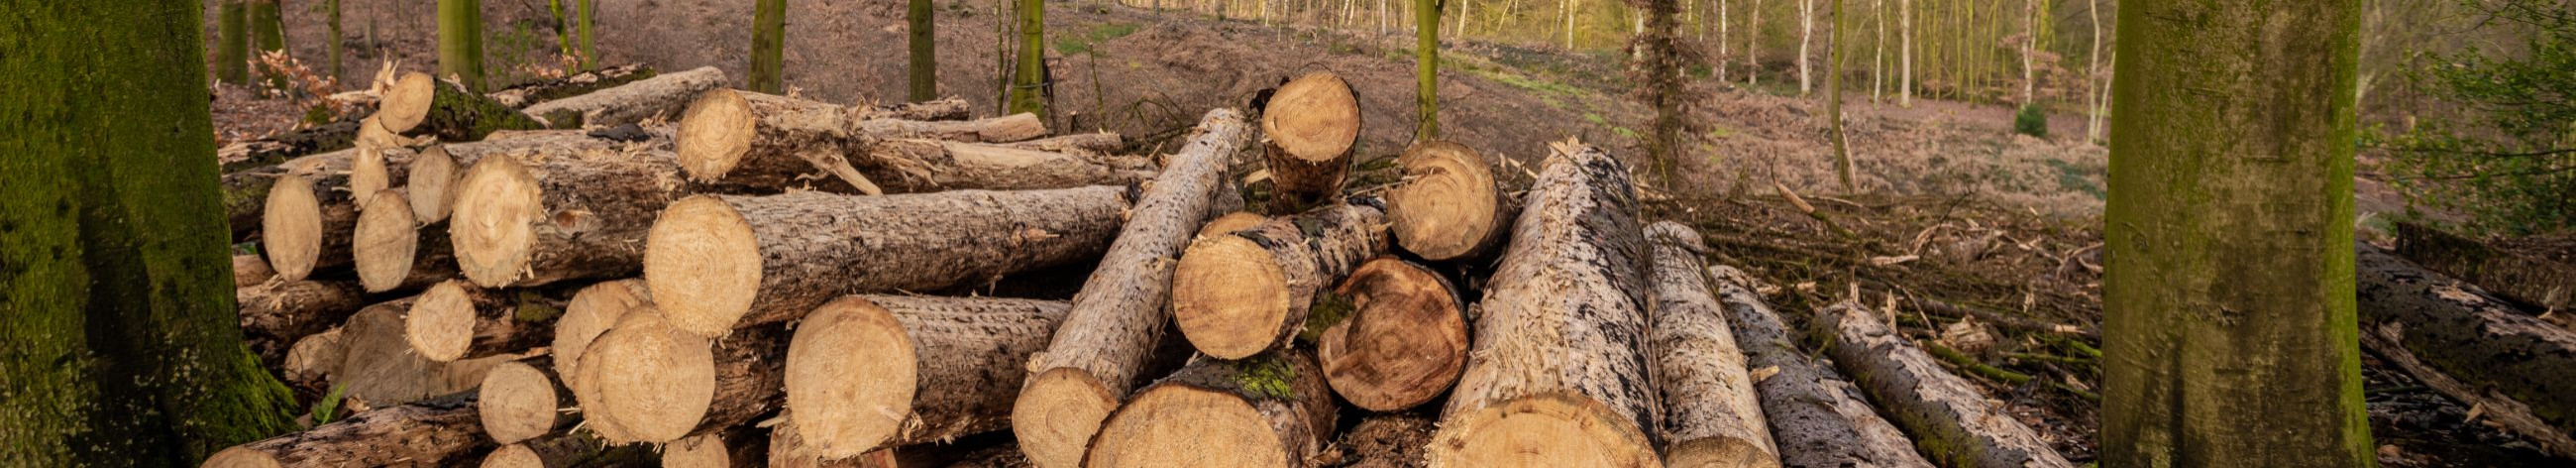 puidu- ja paberitööstus, puidu kokkuost ja müük, Metsapuude materjalid, Metsa istutamine, Sanitaarraie, Harvendusraie, metsakultuuride rajamine, metsakinnistute ost - müük, võsaraie, kraavipervede puhastamine